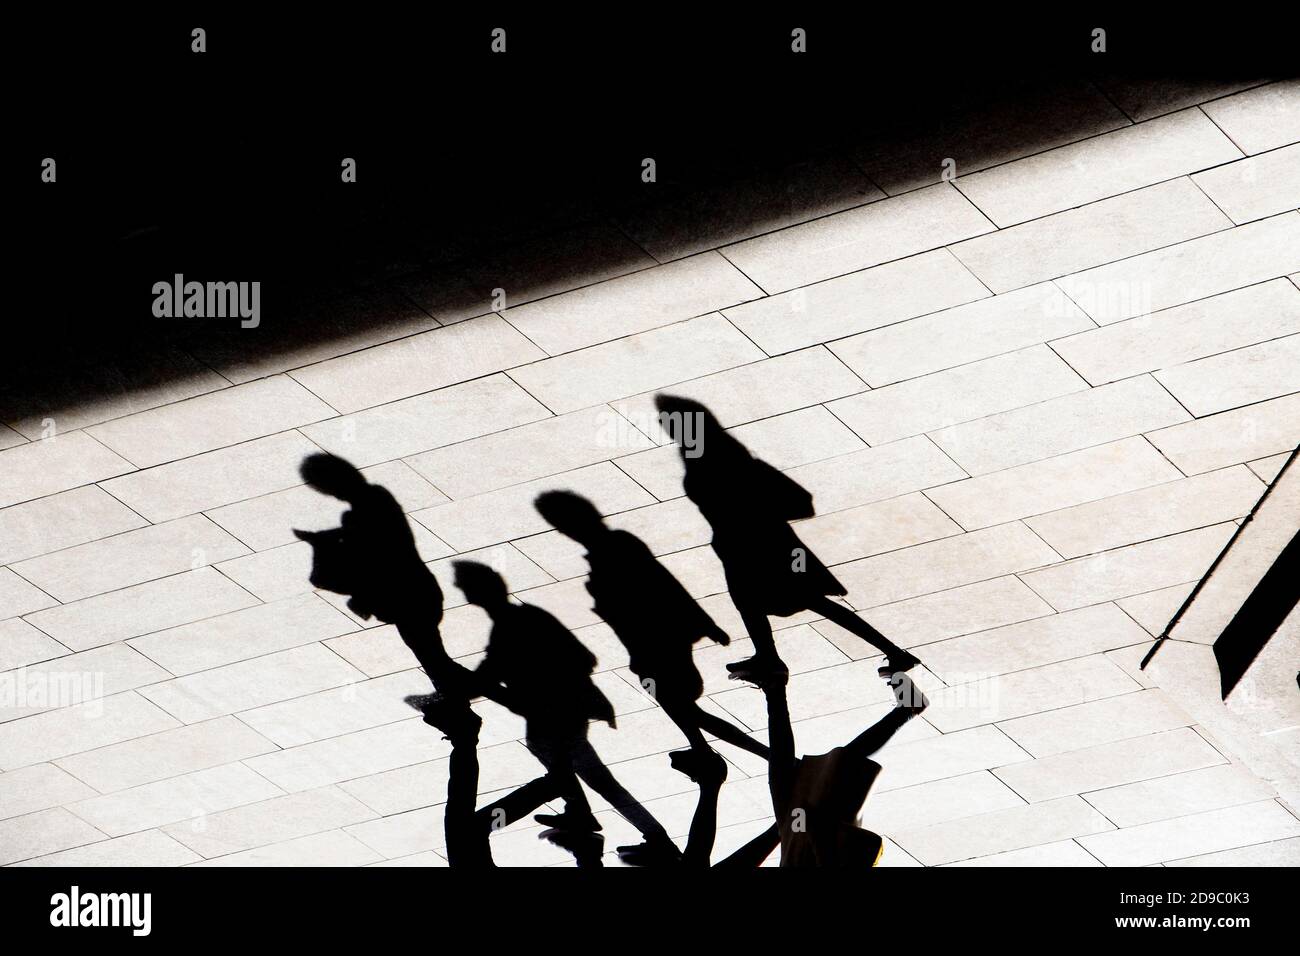 Abstrakte Hintergrund Schatten Silhouette von vier Menschen zu Fuß Stadt Bürgersteig, in hohem Kontrast schwarz und weiß Stockfoto